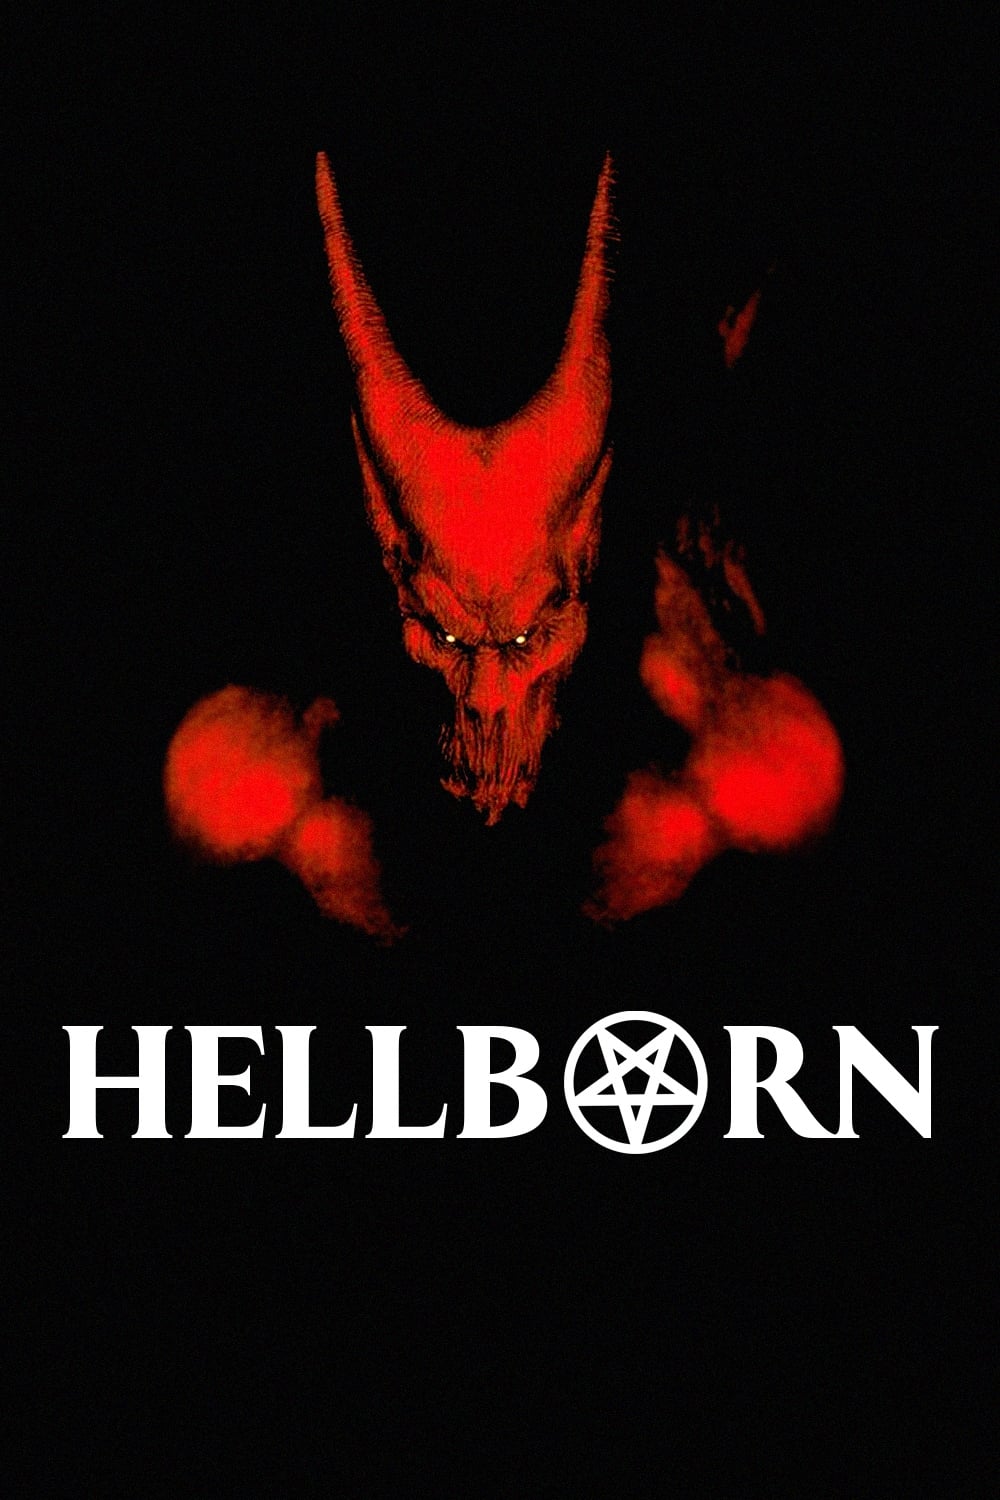 Hellborn (2003)